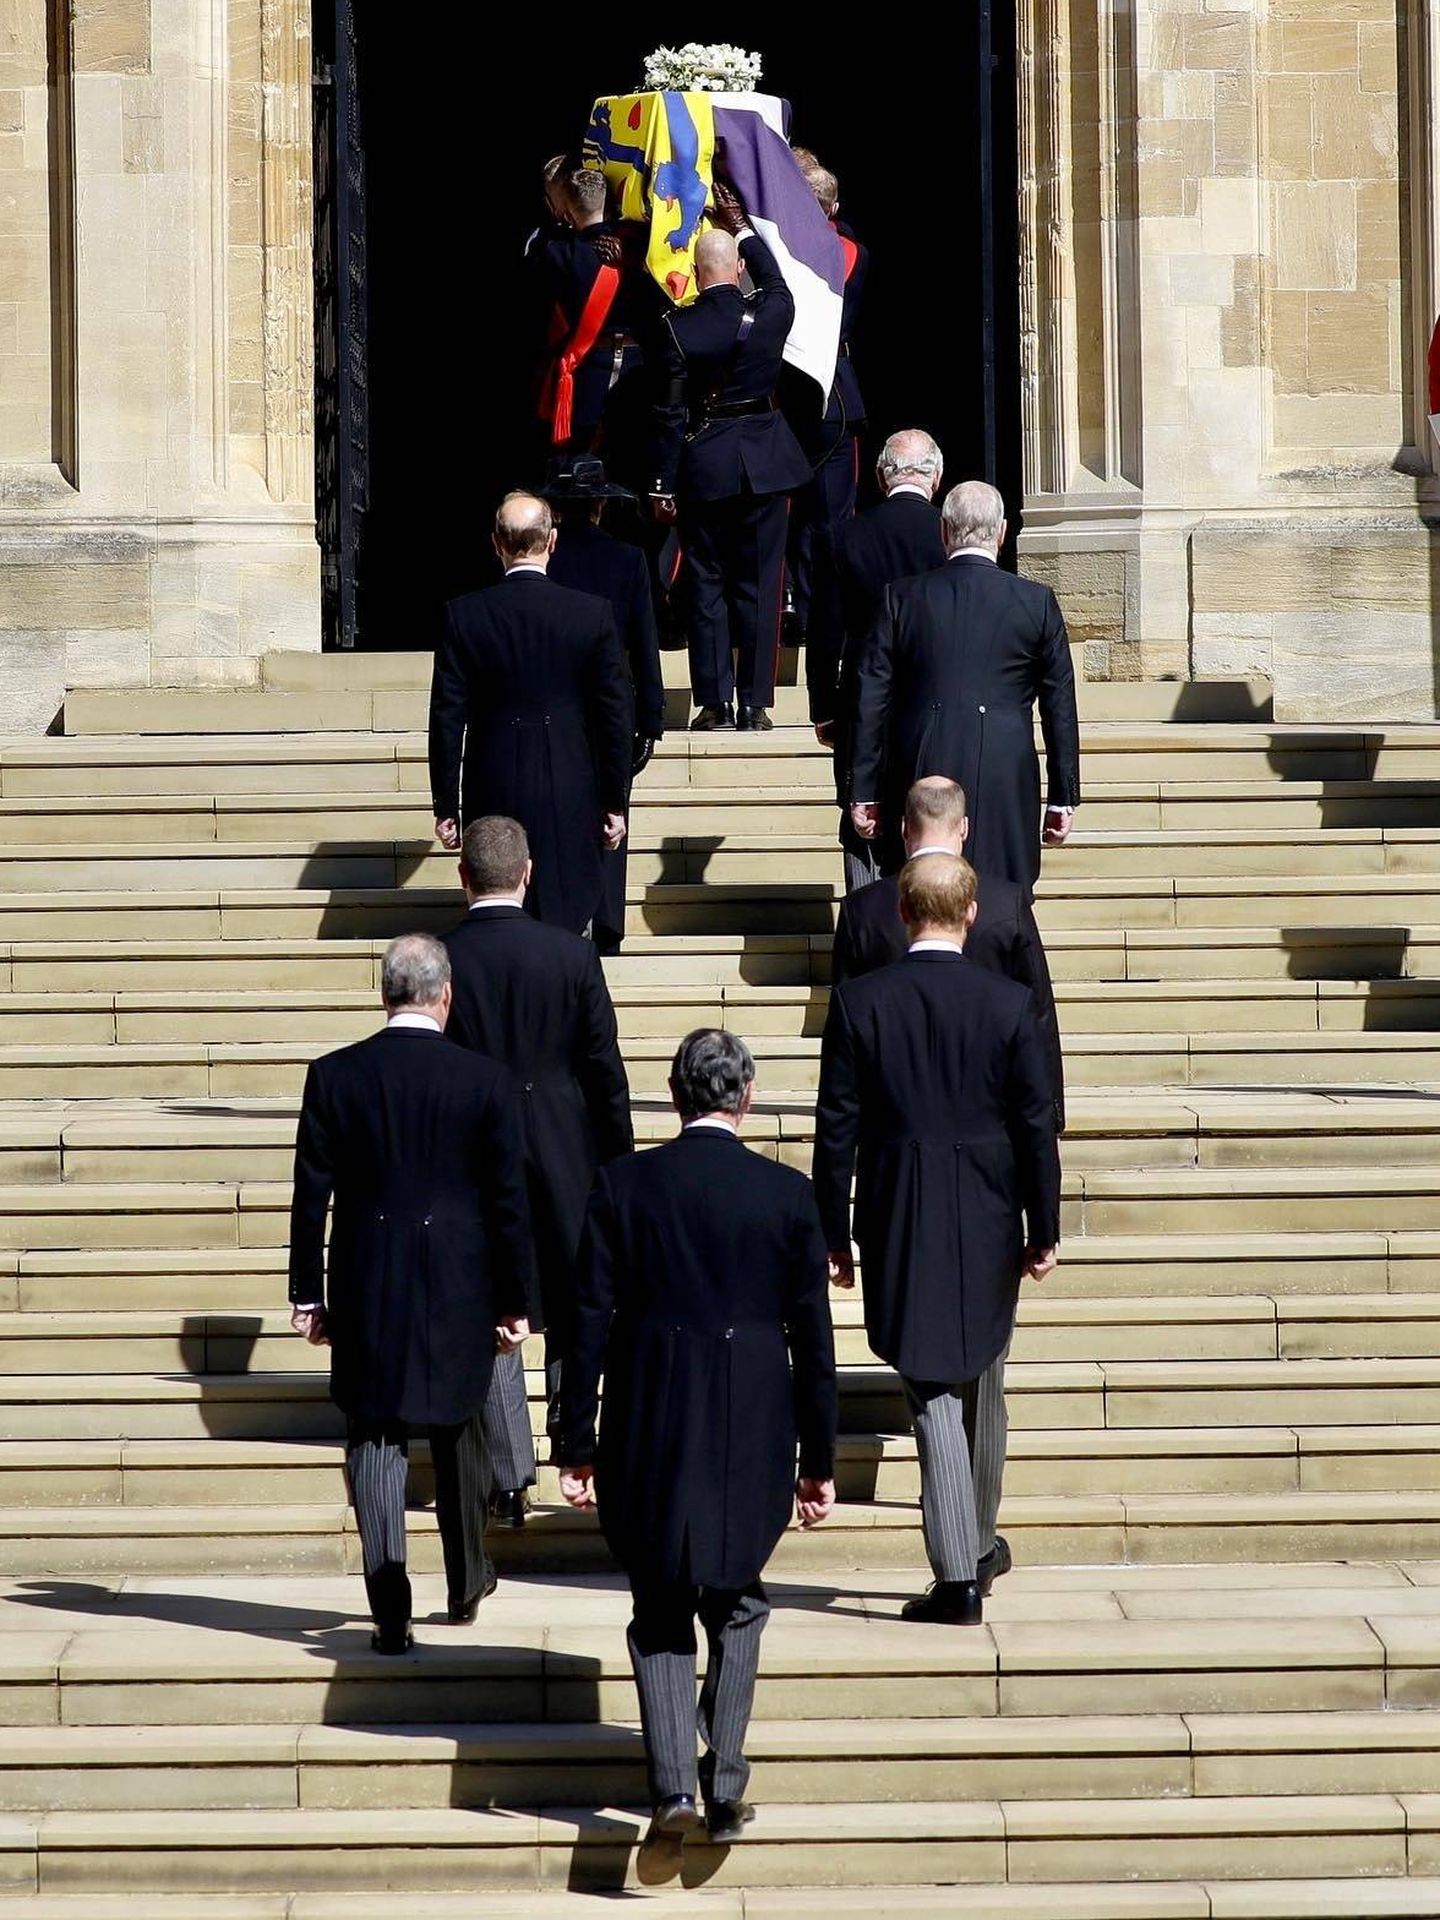 El cortejo fúnebre en el último adiós al duque de Edimburgo. (Palacio de Buckingham)